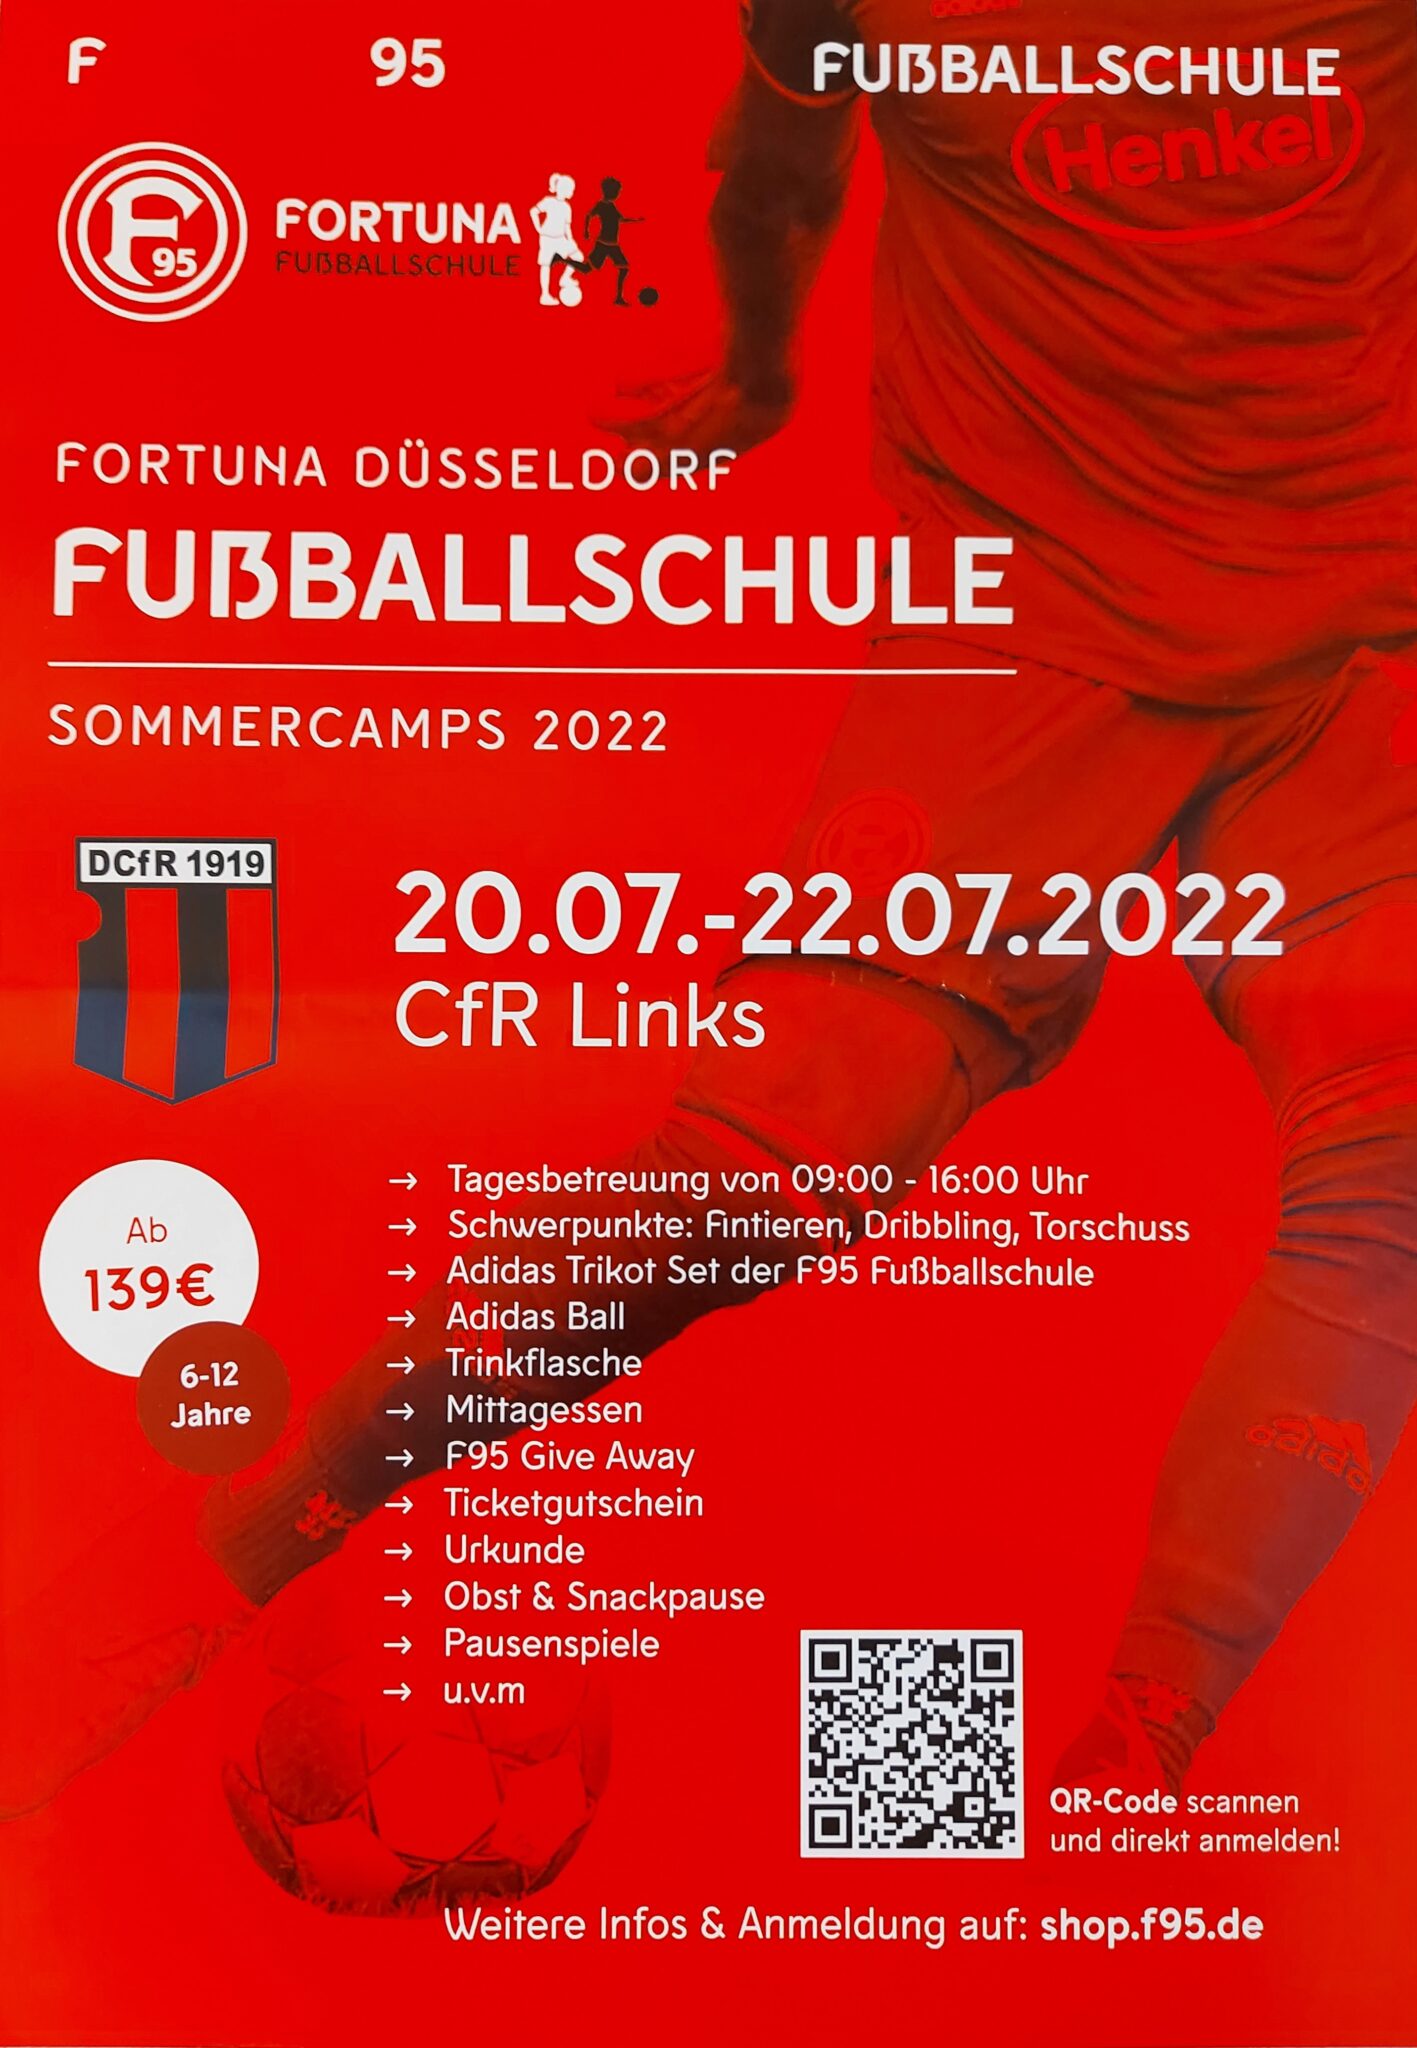 Fortuna Fussballschule